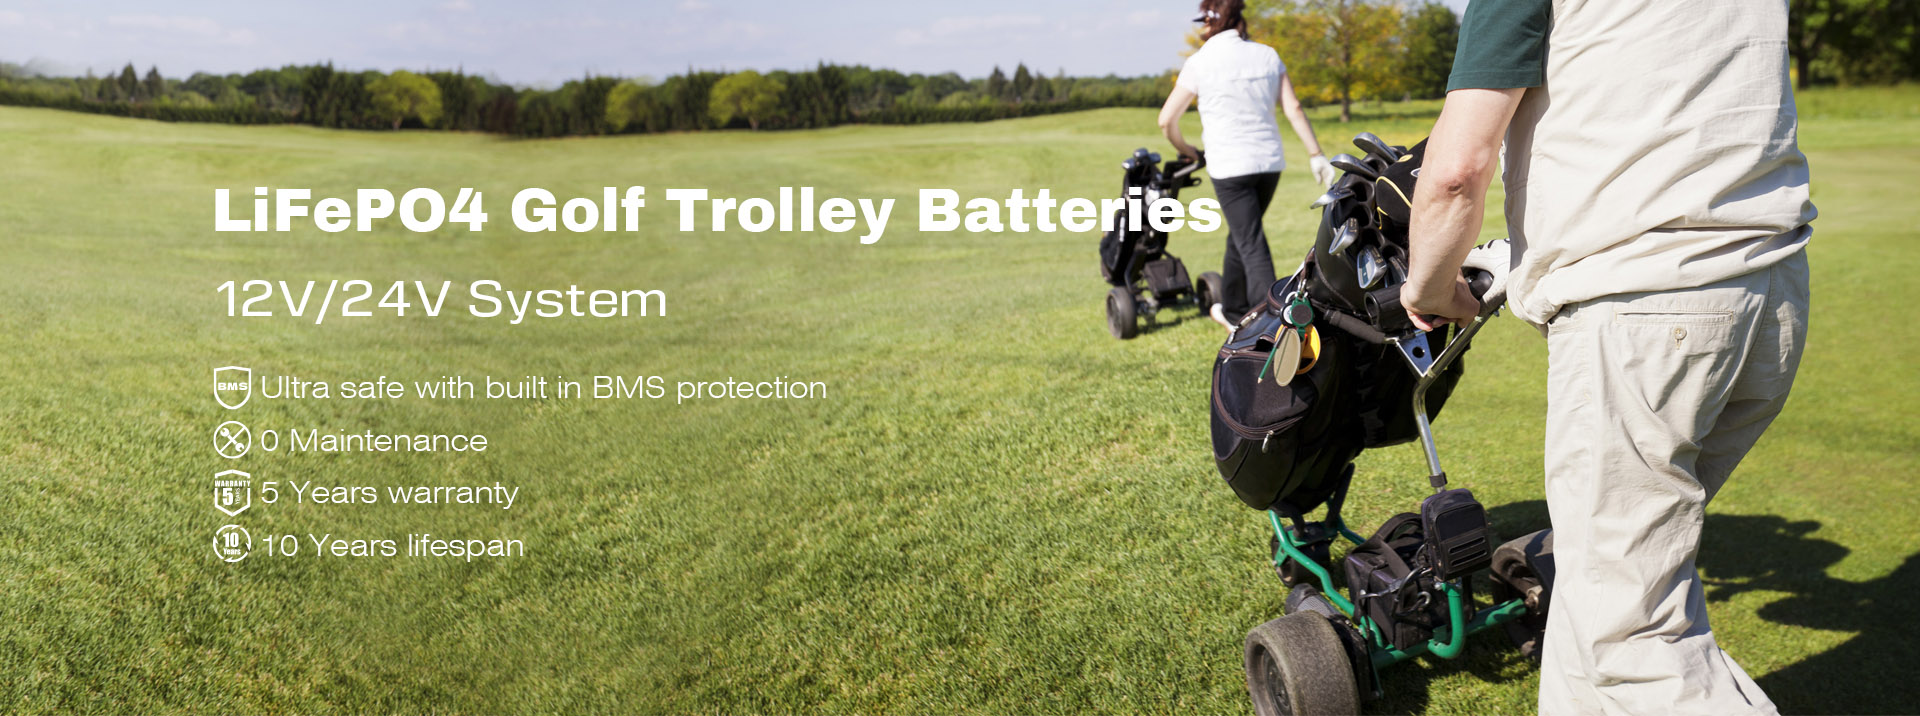 Bateritë e karrocave të golfit LiFePO4